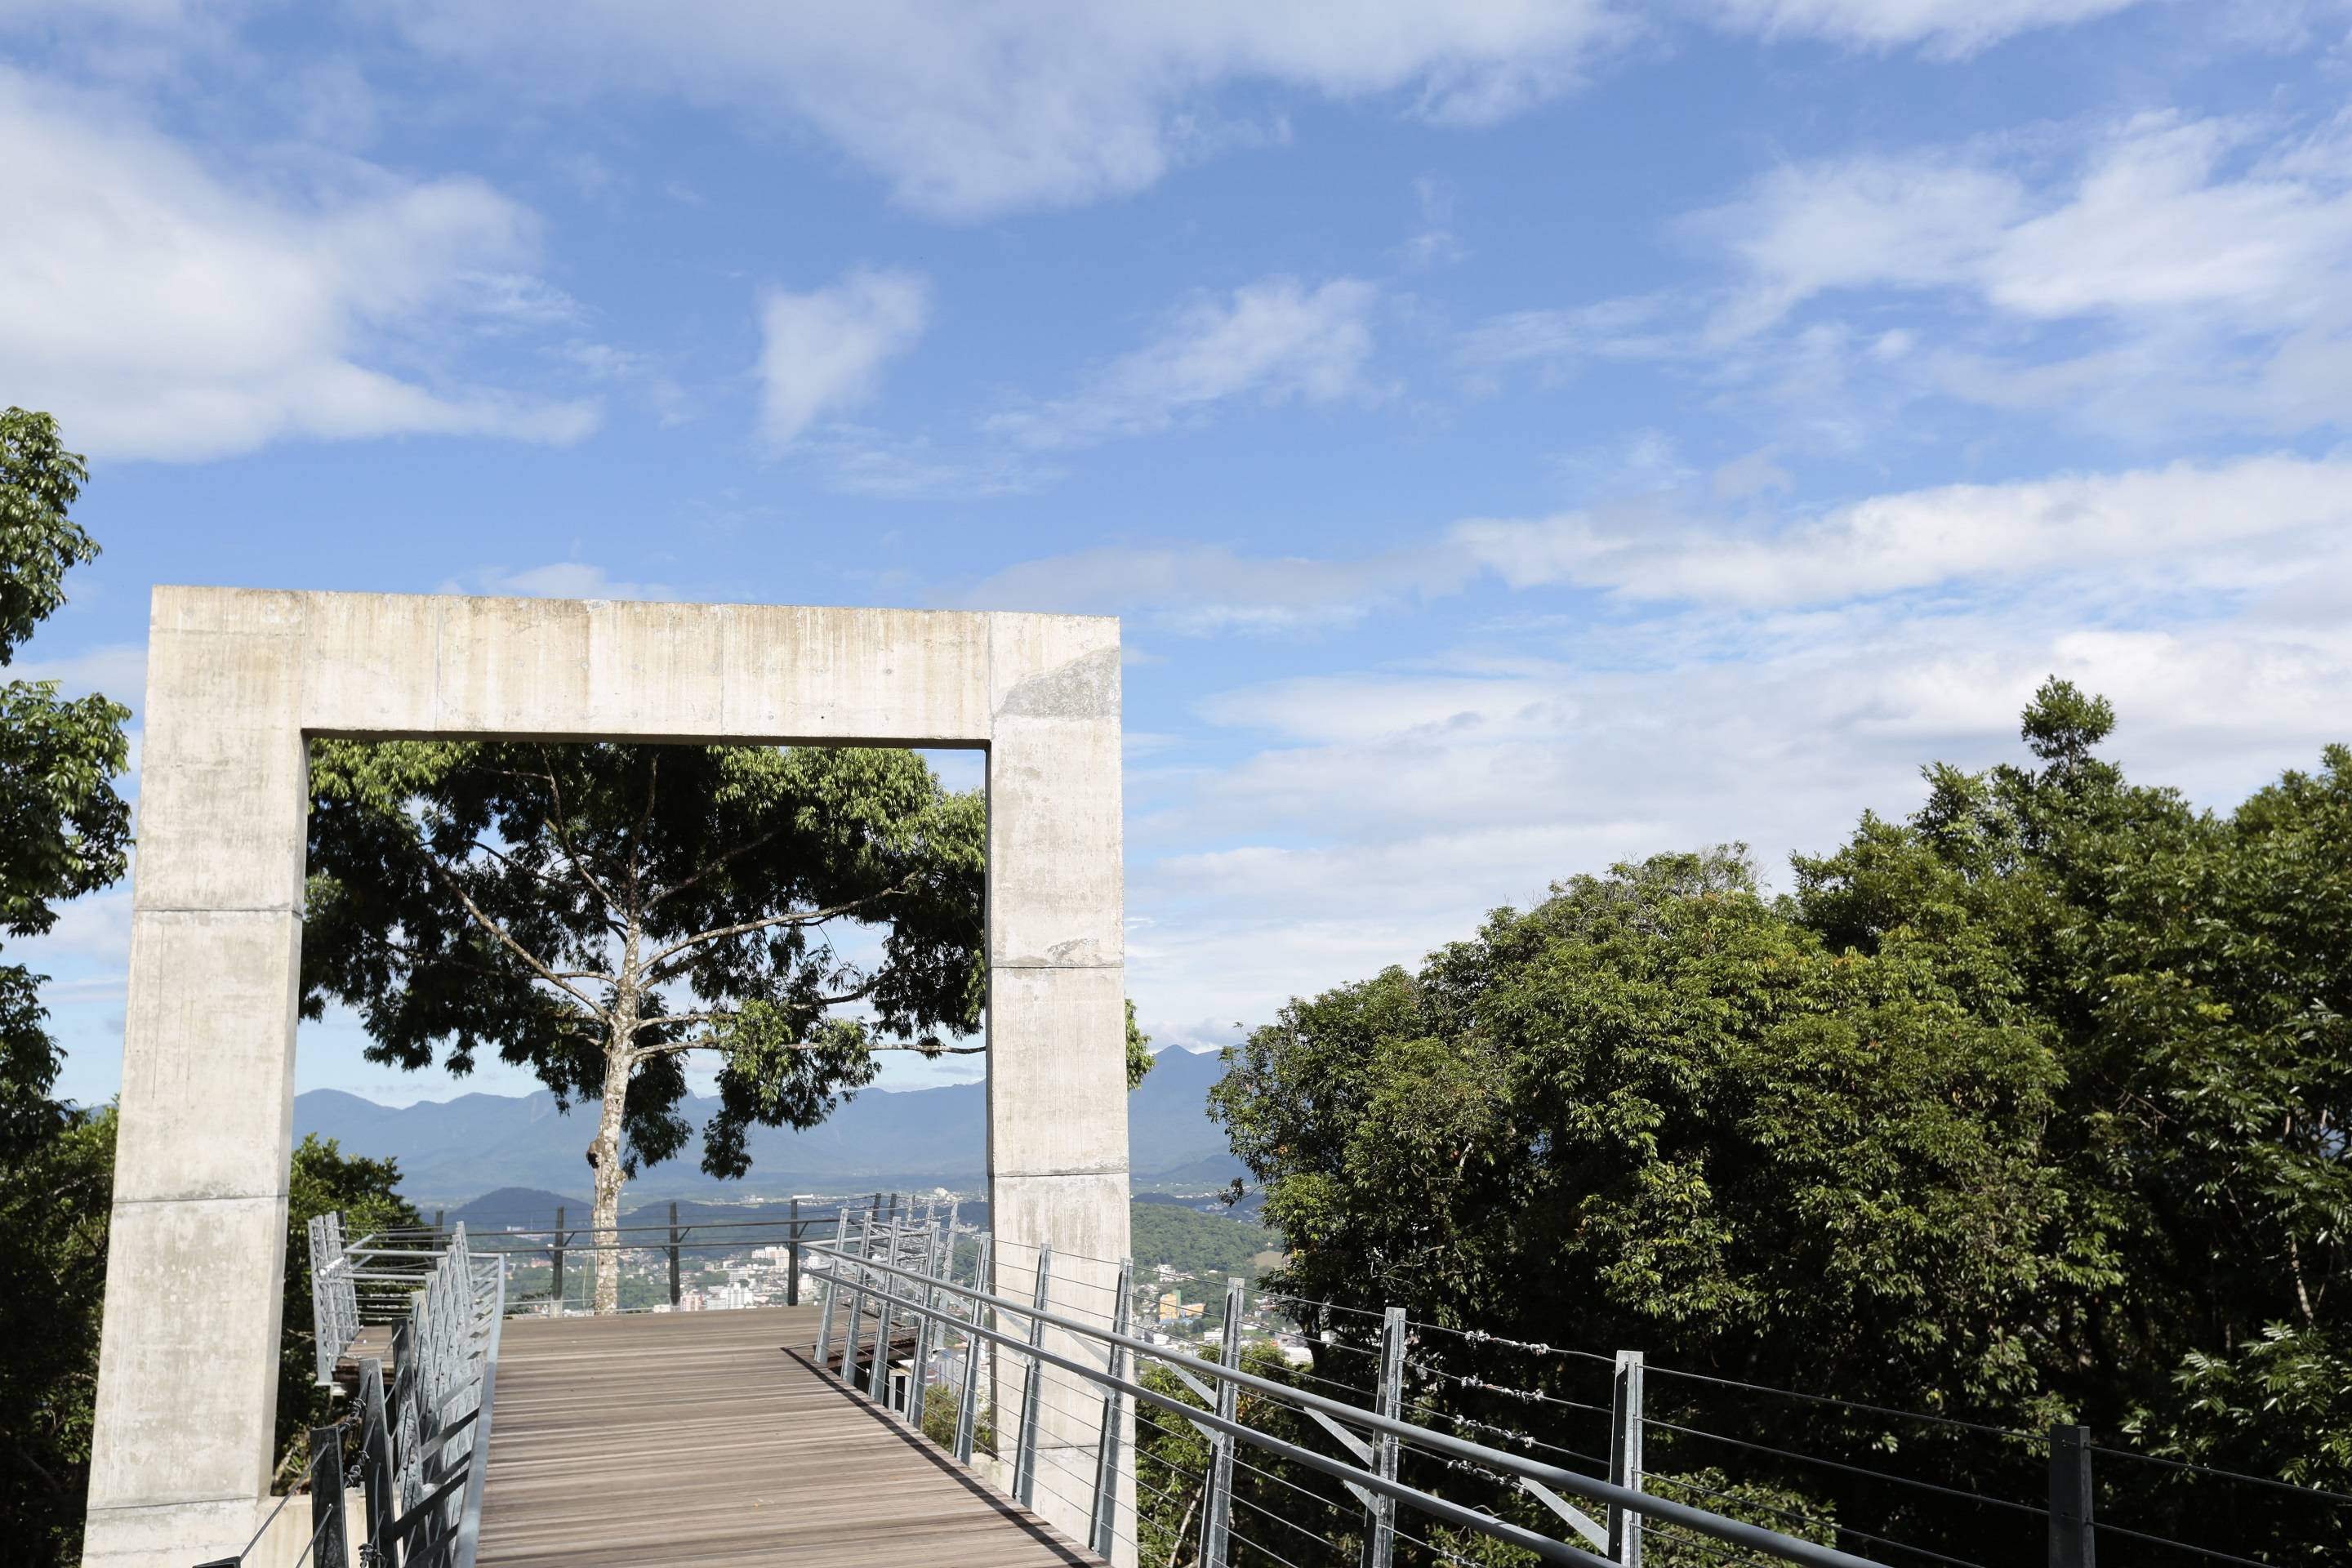 Janela do Mirante do Morro da Boa Vista - Joinville (SC)